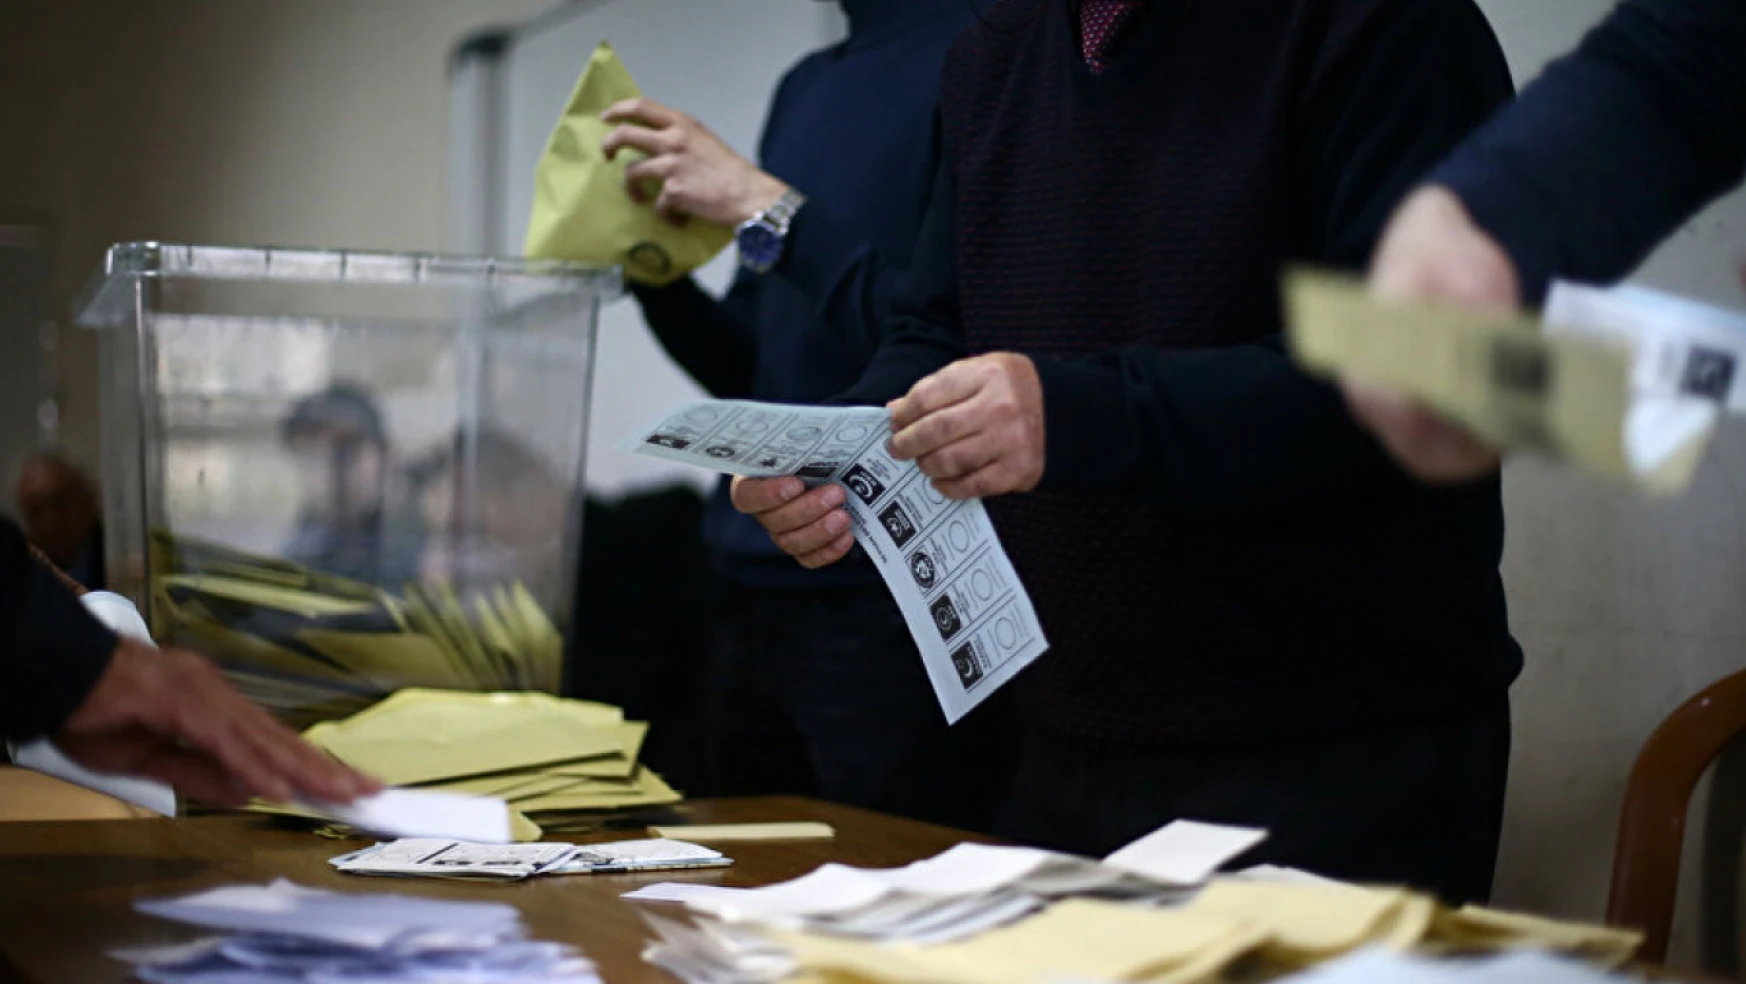 Oy kullanma işlemleri tamamlandı, sandıklar açılmaya başladı